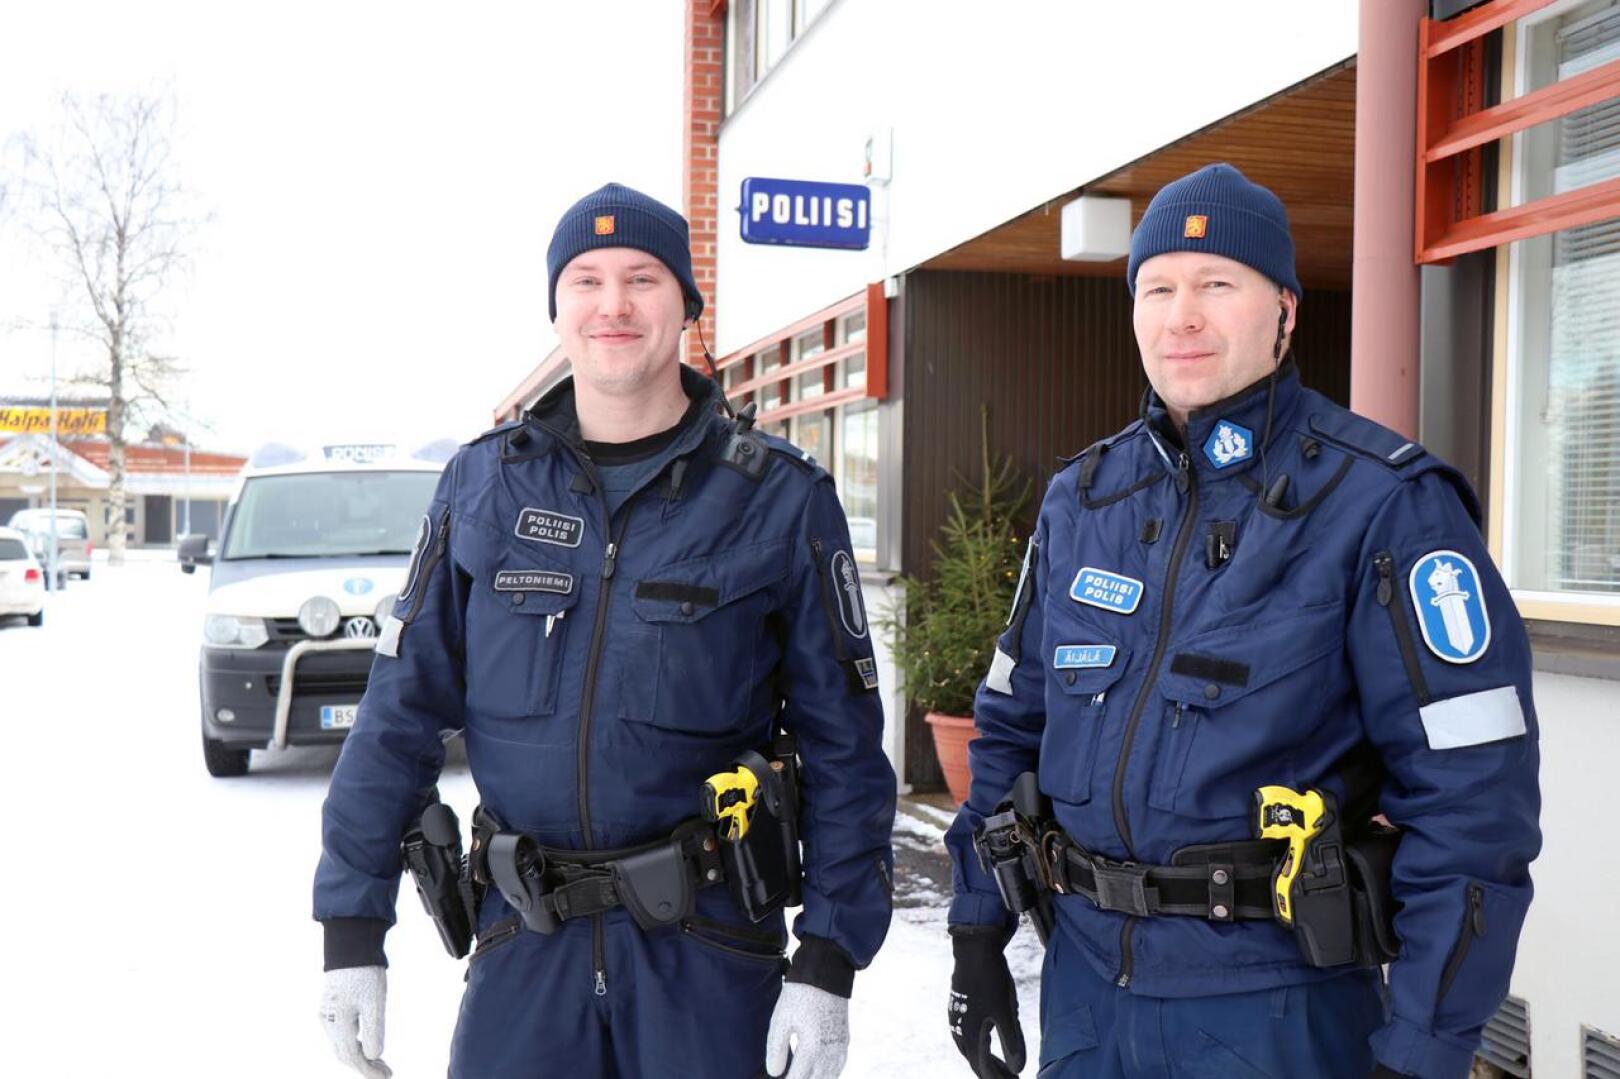 Jimi Peltoniemen ja Pauli Äijälän muodostama poliisipartio aloittaa työvuoronsa nykyään Kaustisen poliisiasemalta. Aiemmin lähtöpaikkana oli Kannus.